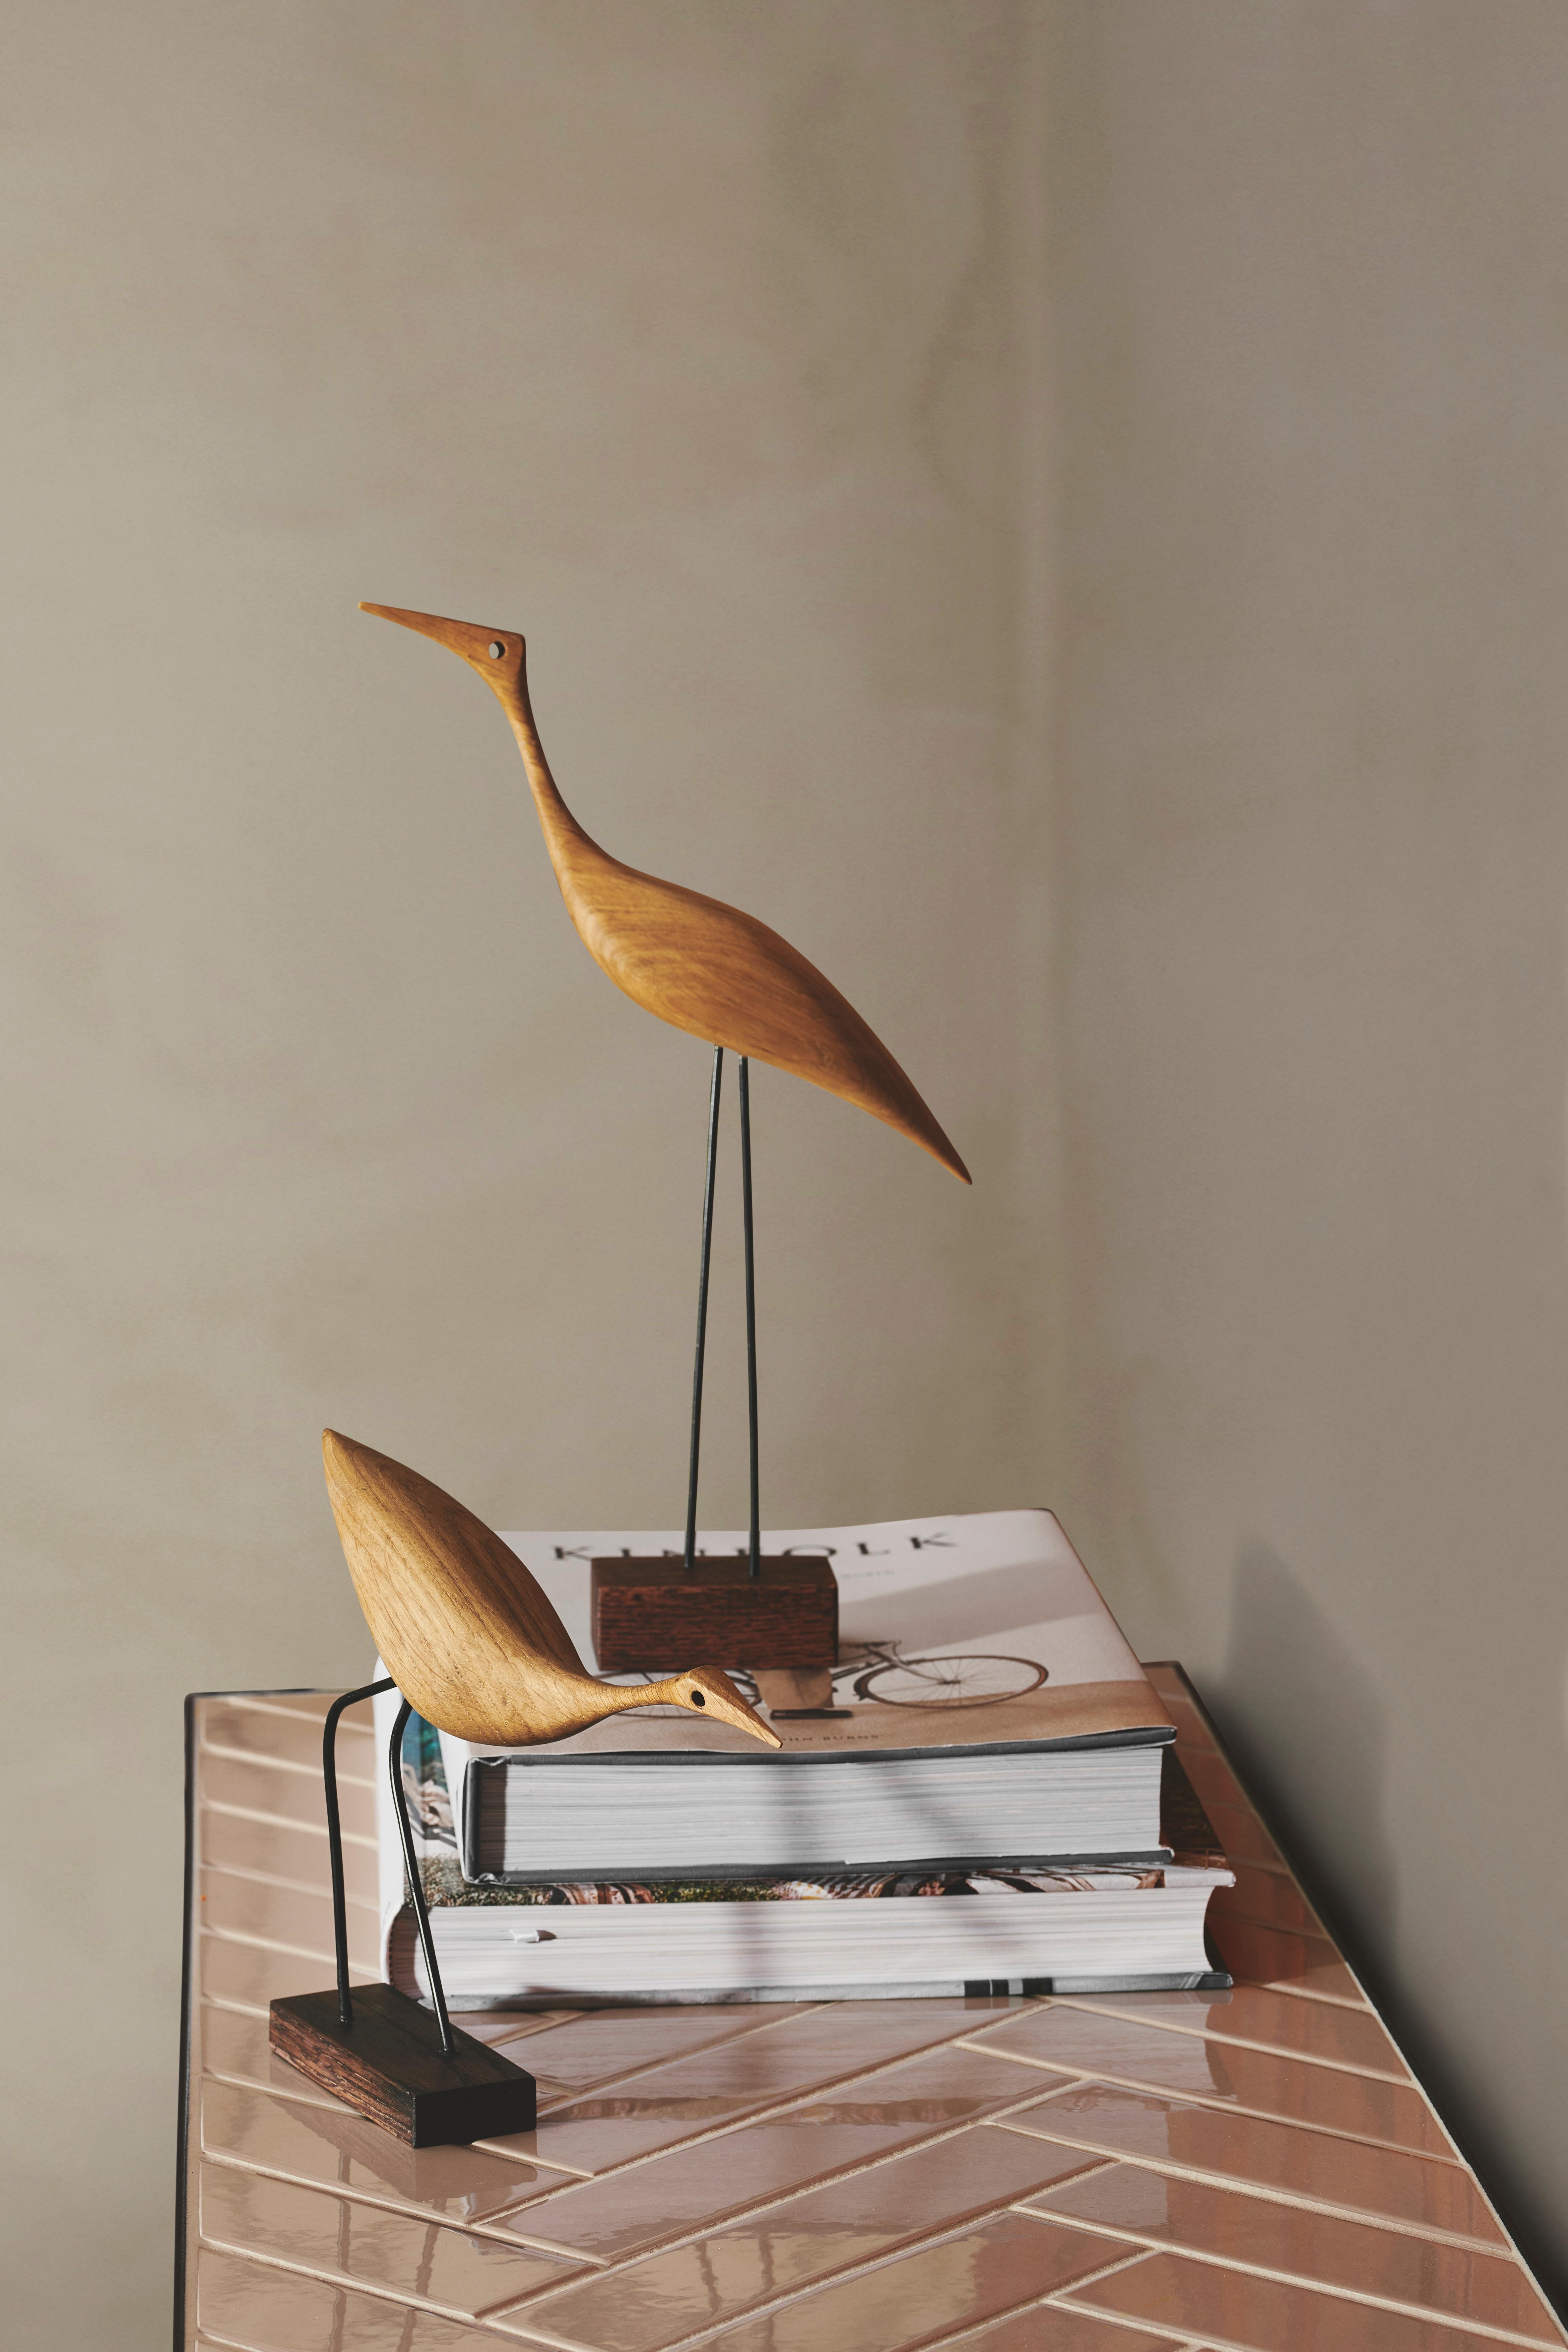 Charmante Teakholzvögel mit Schnabel und großer Persönlichkeit. Hergestellt in Dänemark und entworfen von dem international bekannten Designer Svend Aage Holm-Sørensen, der in den 1950er Jahren vor allem für seine Lampendesigns bekannt war. Beak